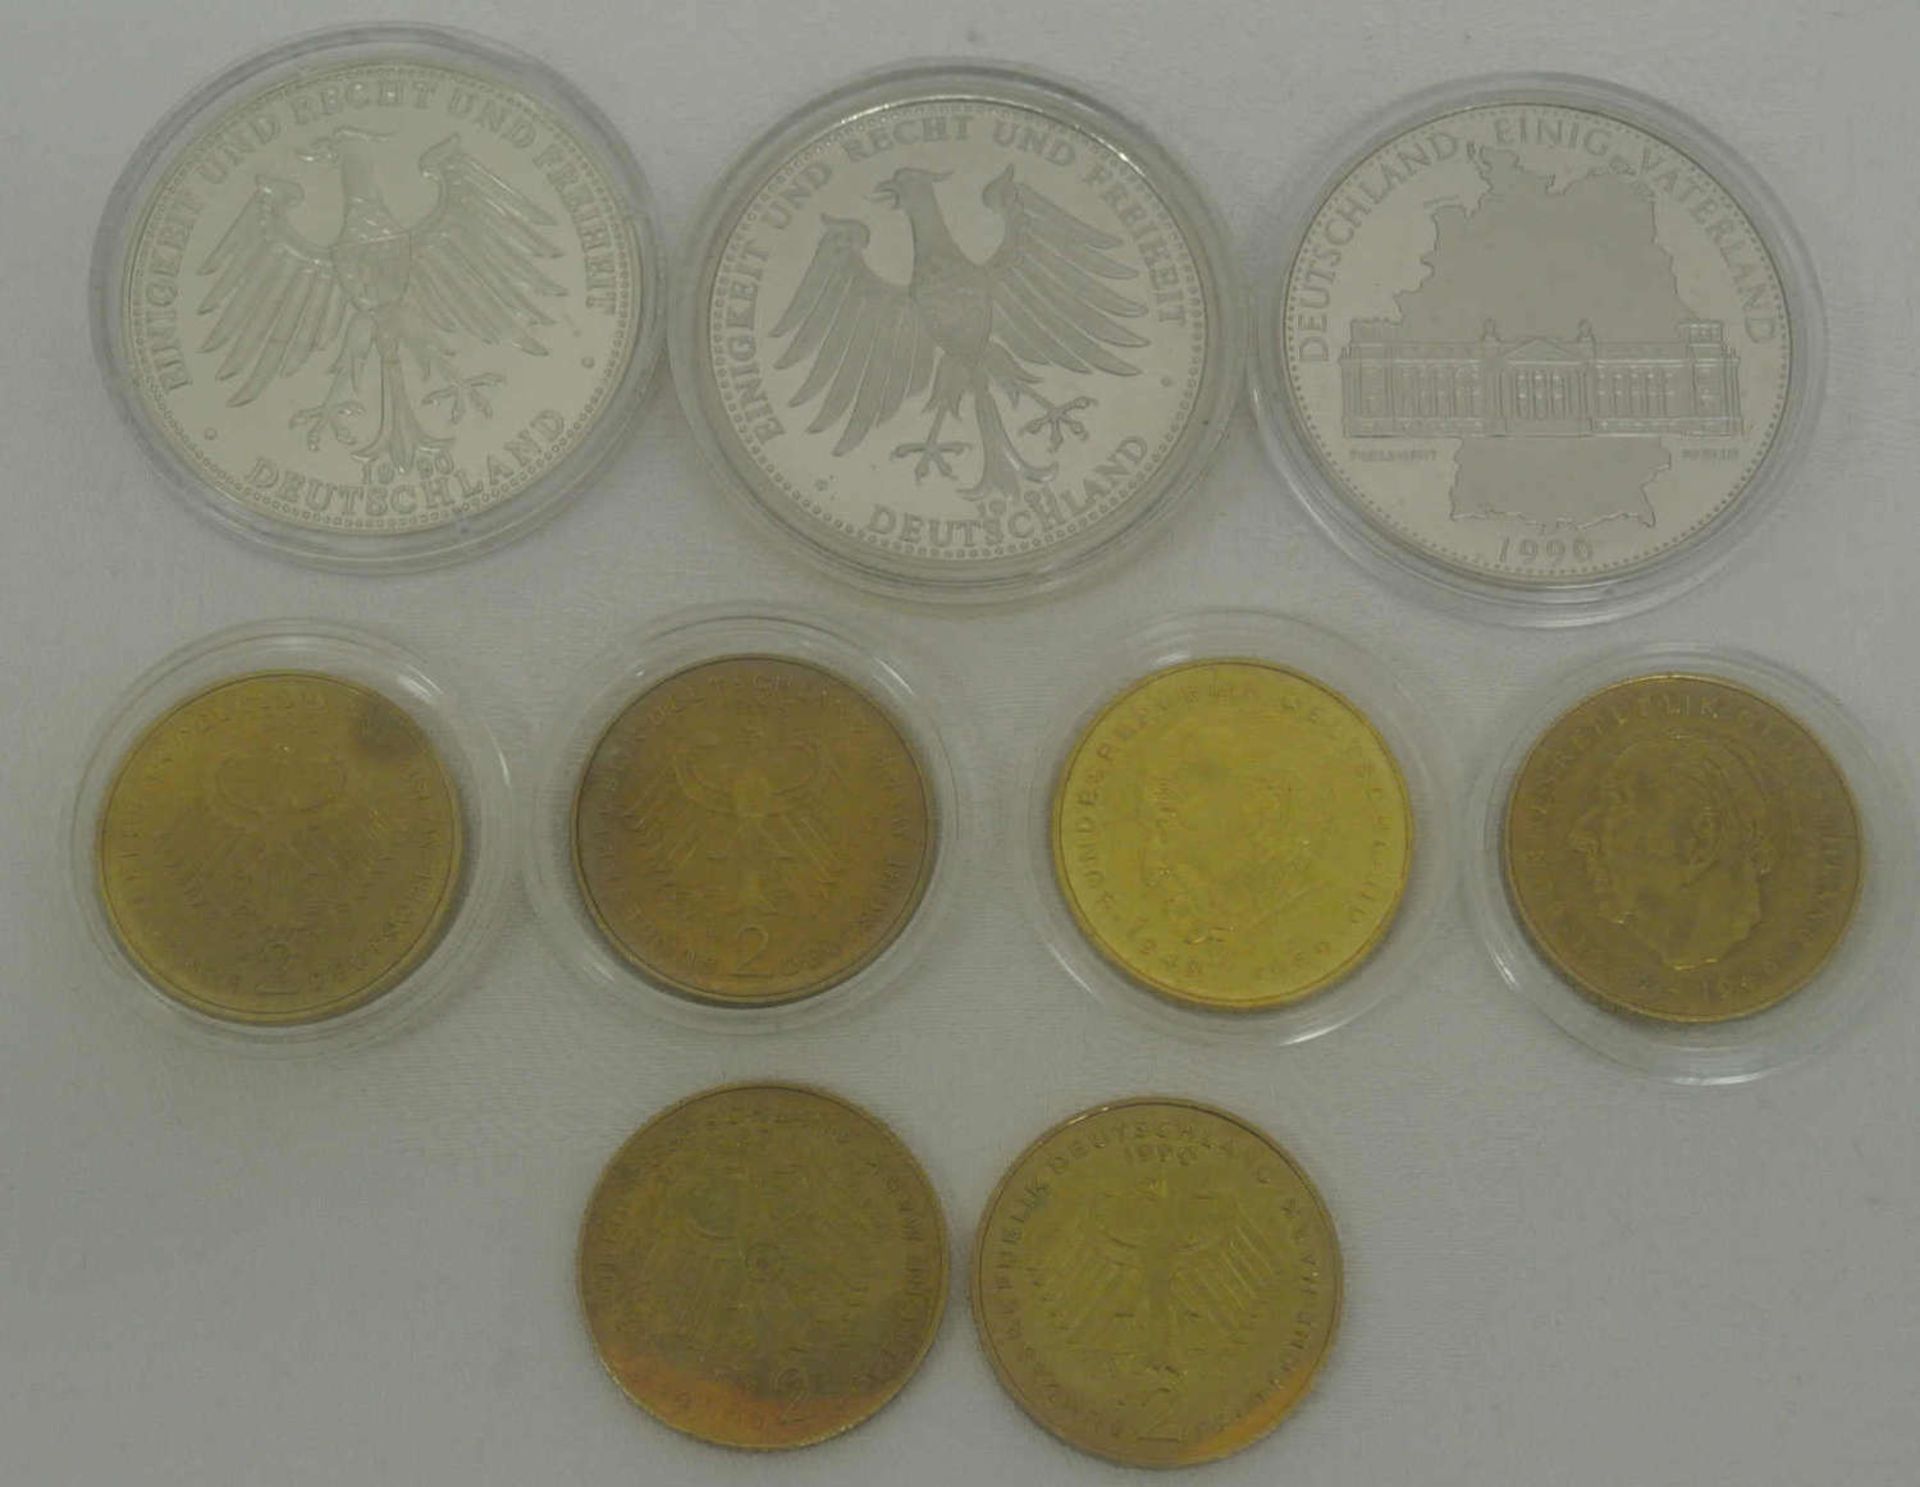 BRD, Lot von 6 vergoldeten 2 DM Stücken, sowie 3 Medaillen BRD 1989-1991. Guter Zustand - Bild 2 aus 2